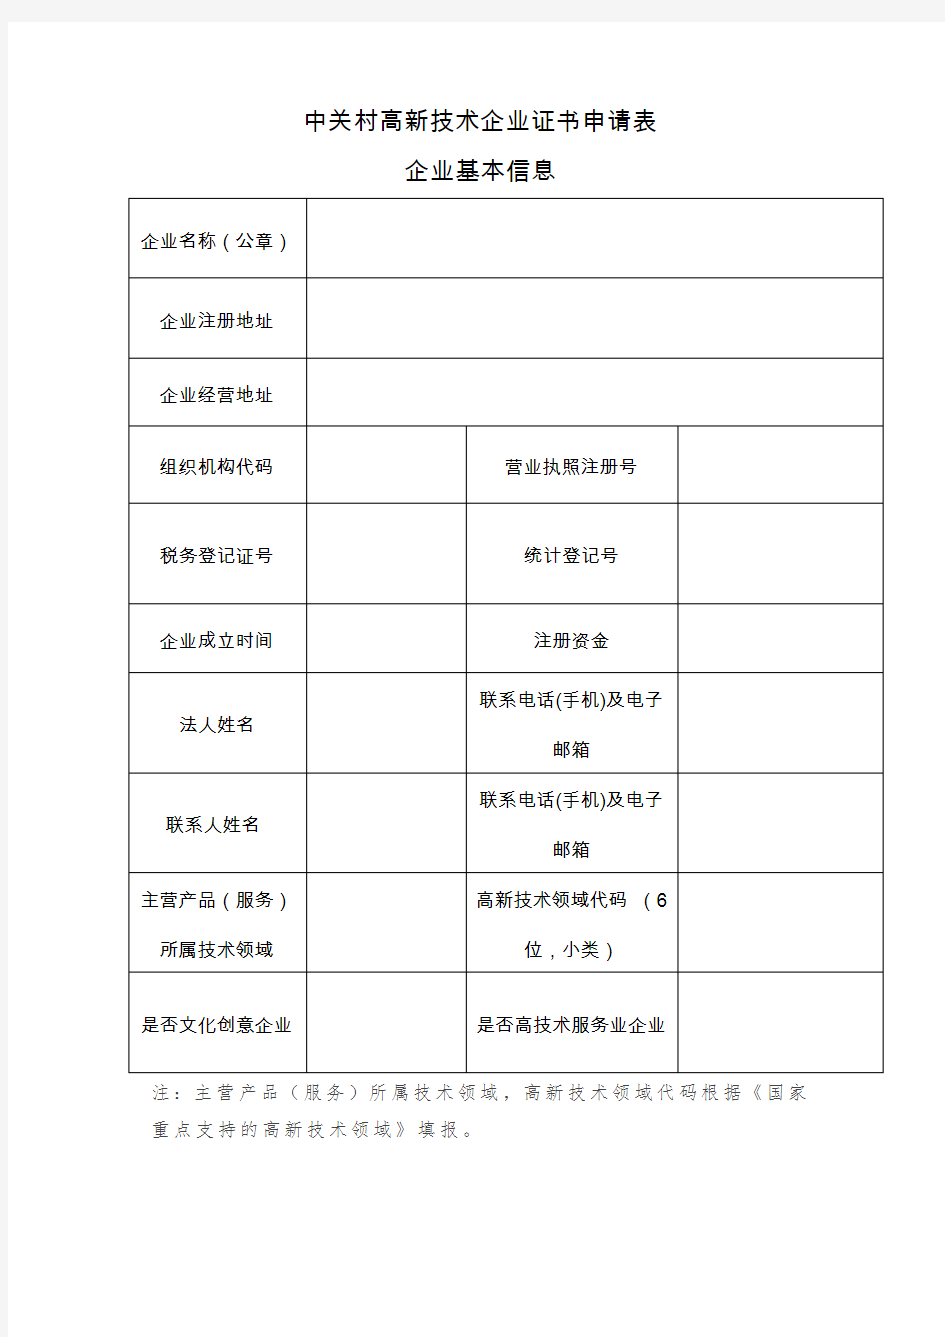 中关村高新技术企业证书申请表